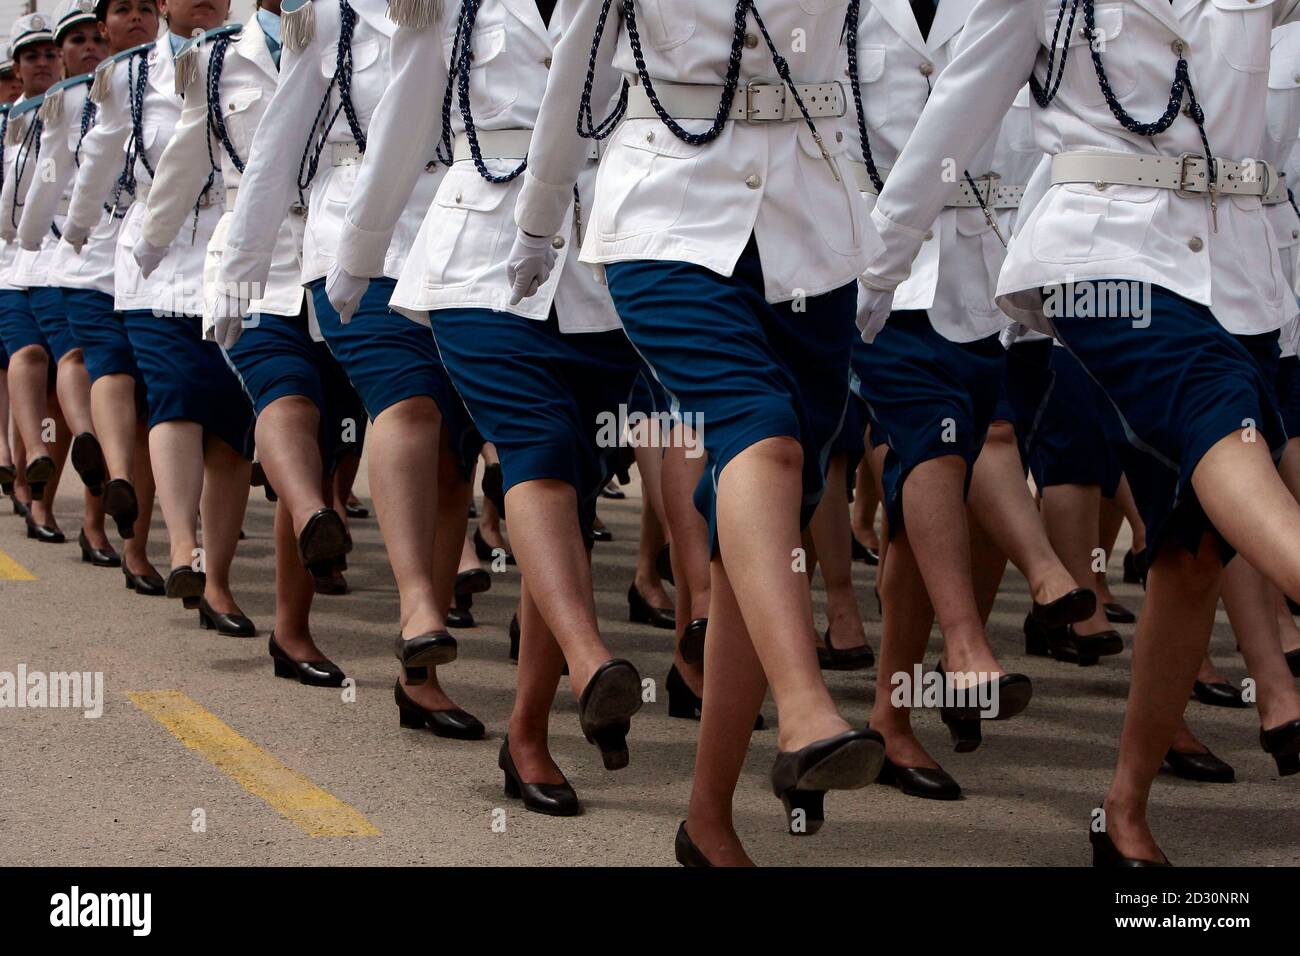 Les cadets de la police défilent lors de leur cérémonie de remise des  diplômes à l'académie de police d'Ain Benian le 6 août 2009. Même en Algérie  relativement libérale, certains pensent que